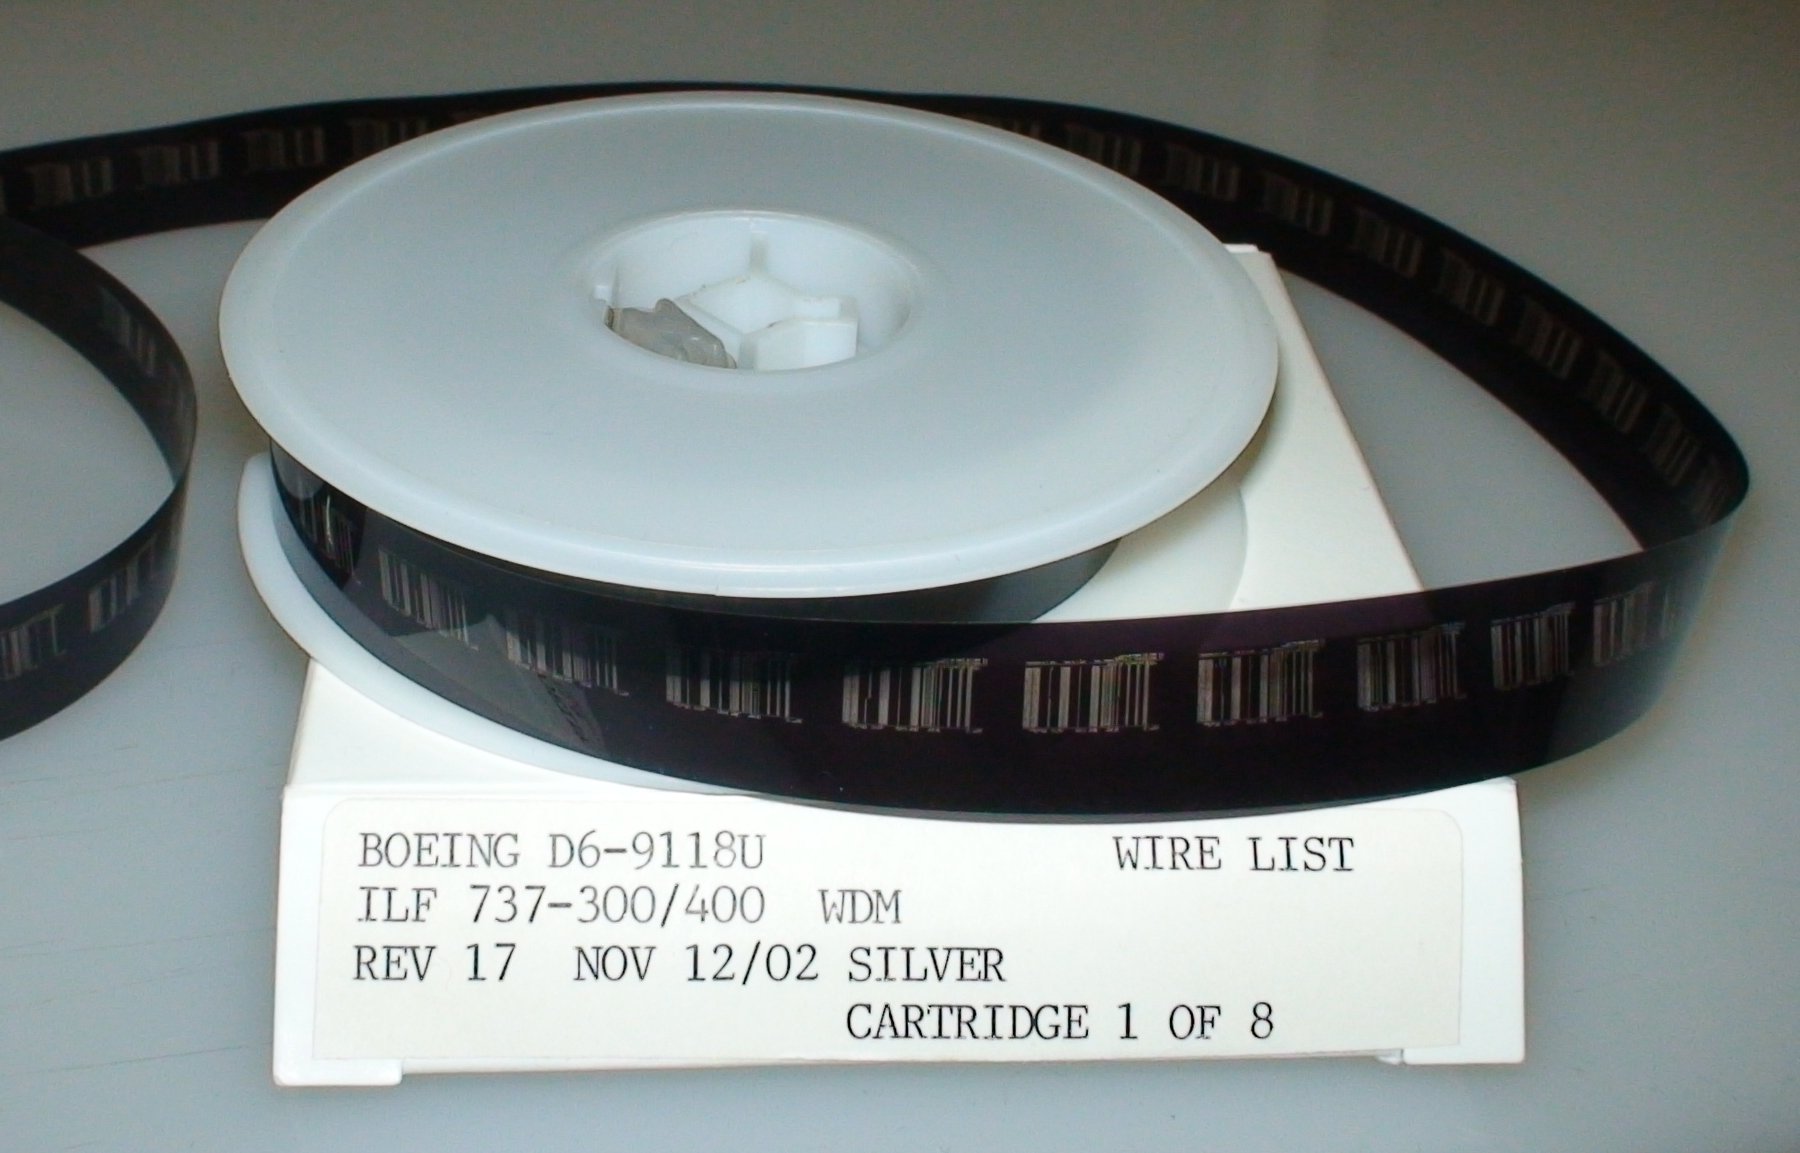 René Dagron, photographe et inventeur français, est le premier à breveter le procédé de microfilm, le 21 juin 1859, qui&nbsp;enregistre des données analogiques puis numériques. © Ianaré Sévi, CC BY-SA 2.5, Wikimedia Commons